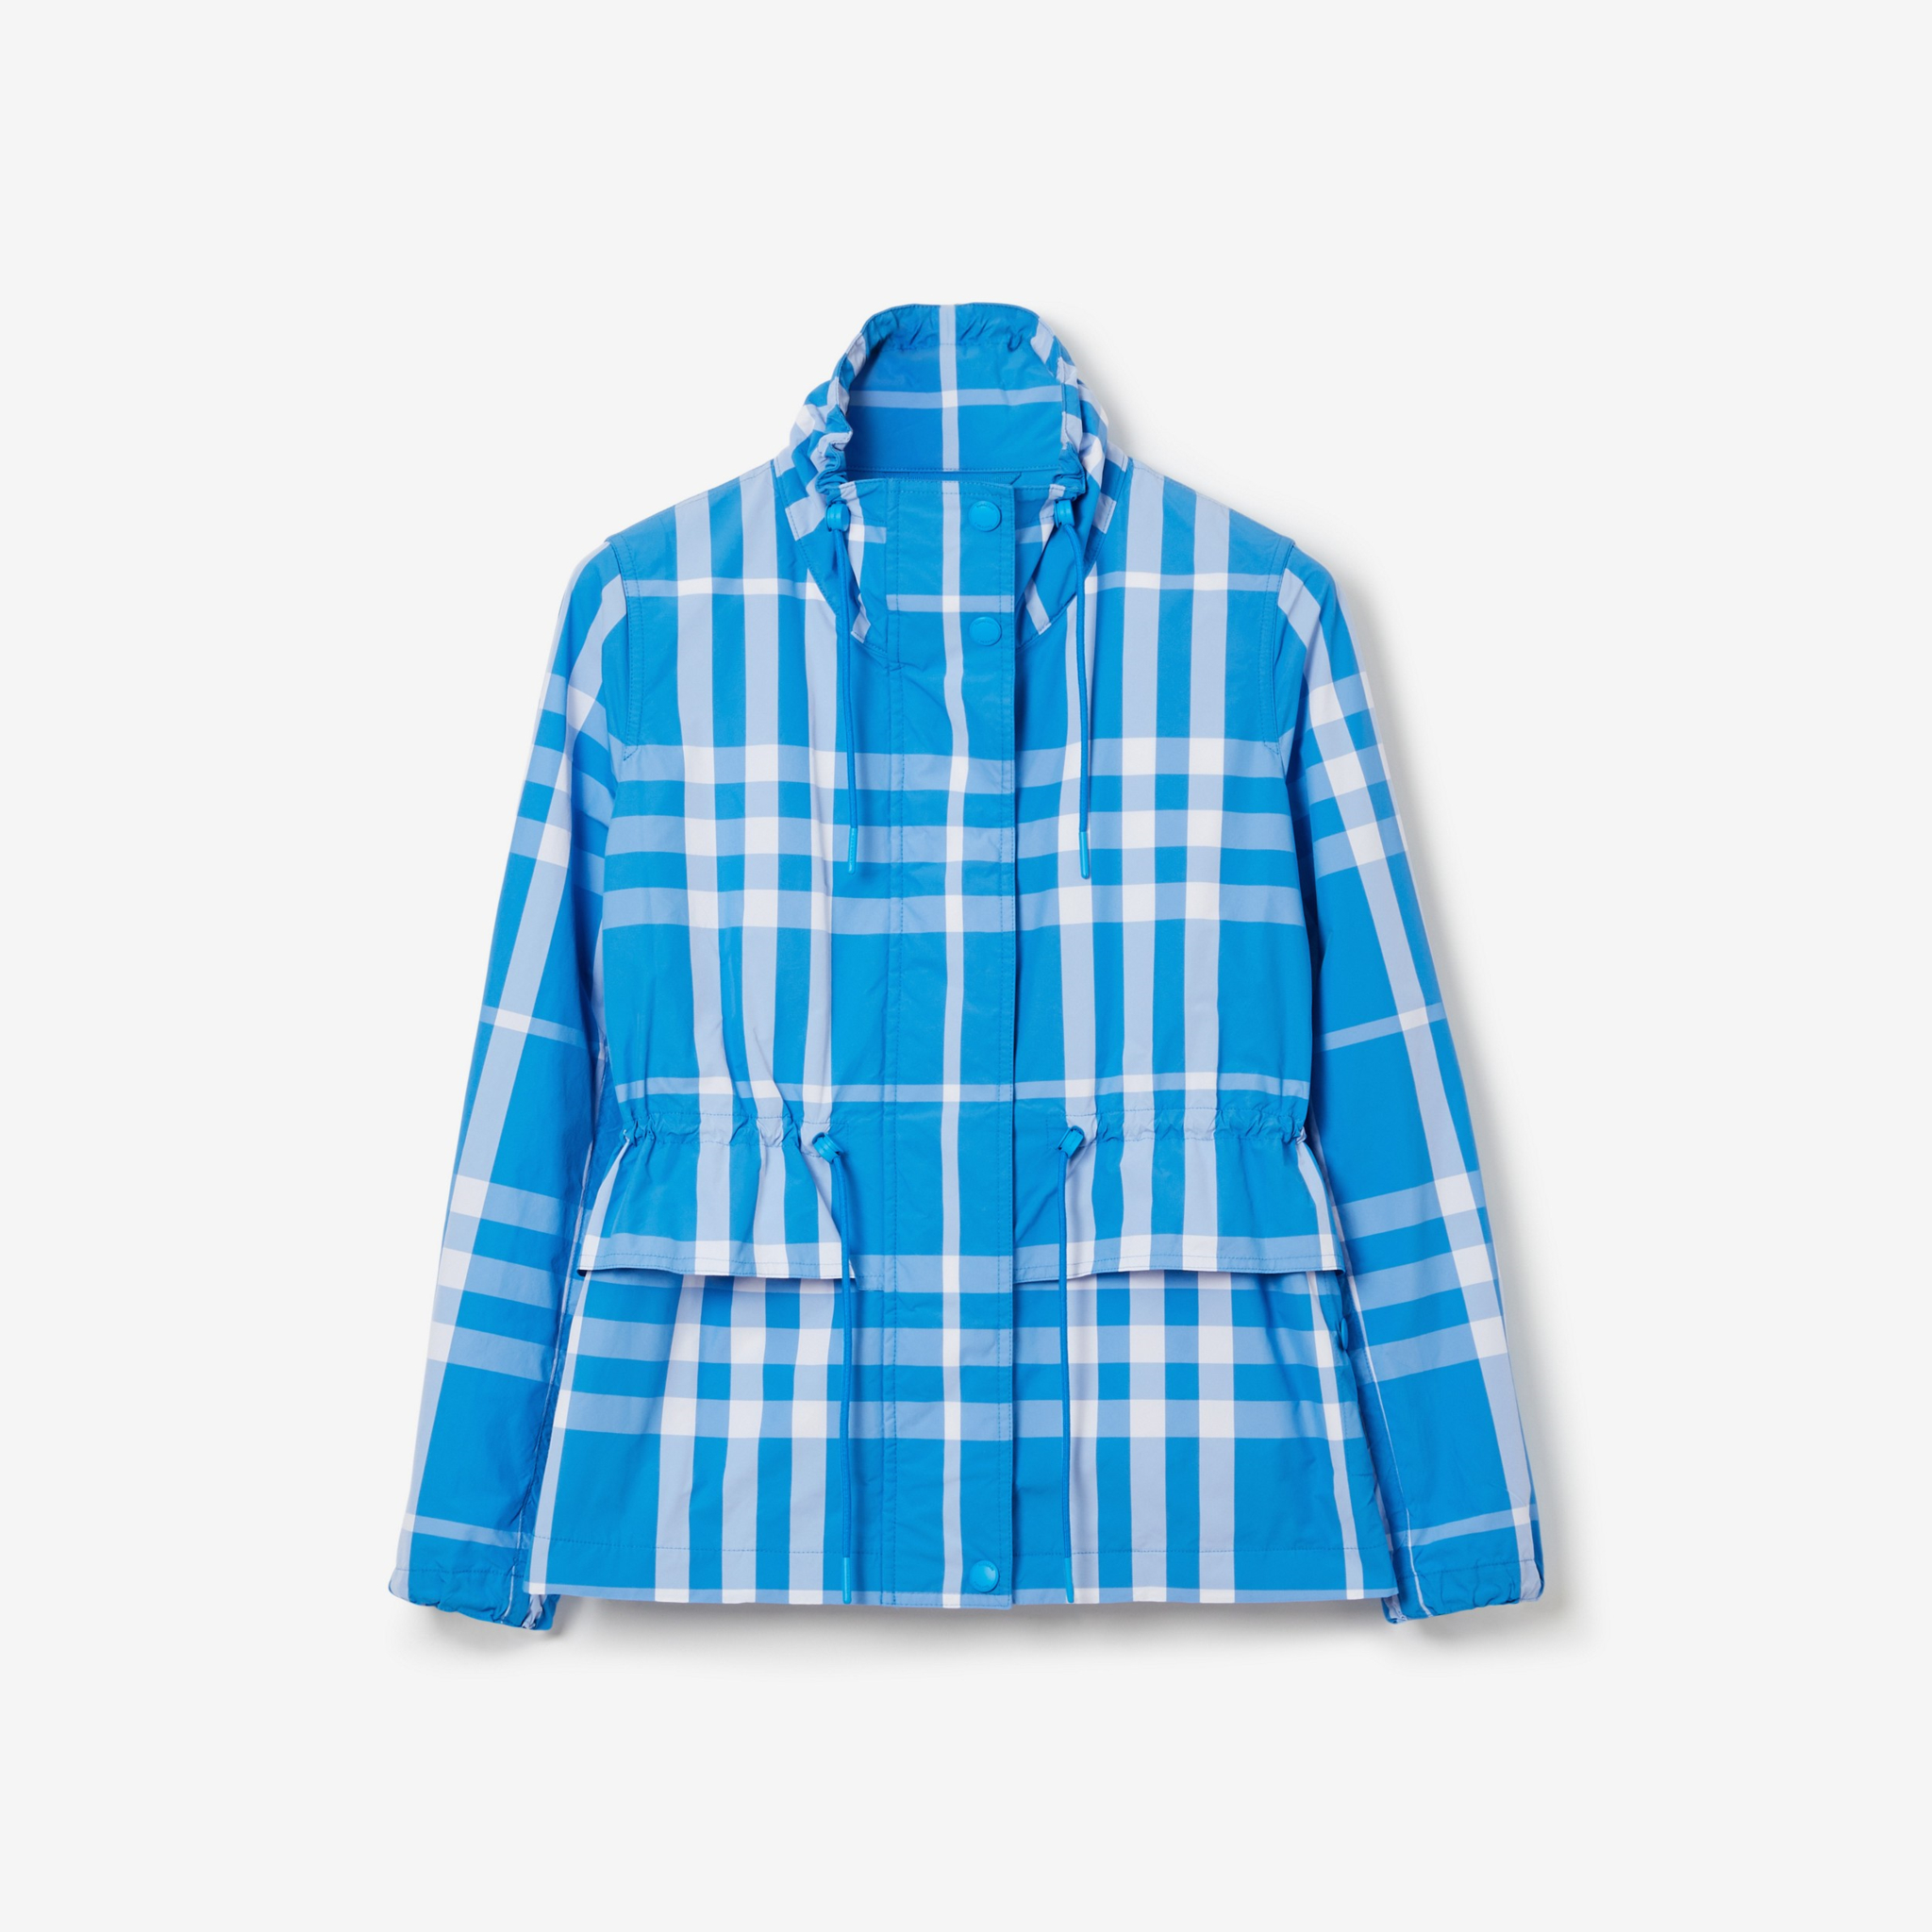 버버리 체크 나일론 퍼넬 넥 재킷 - 직조가 촘촘한 소재, 목을 감싸는 칼라는 바람뿐 아니라 자외선으로부터 목을 보호한다. 188만 원. 